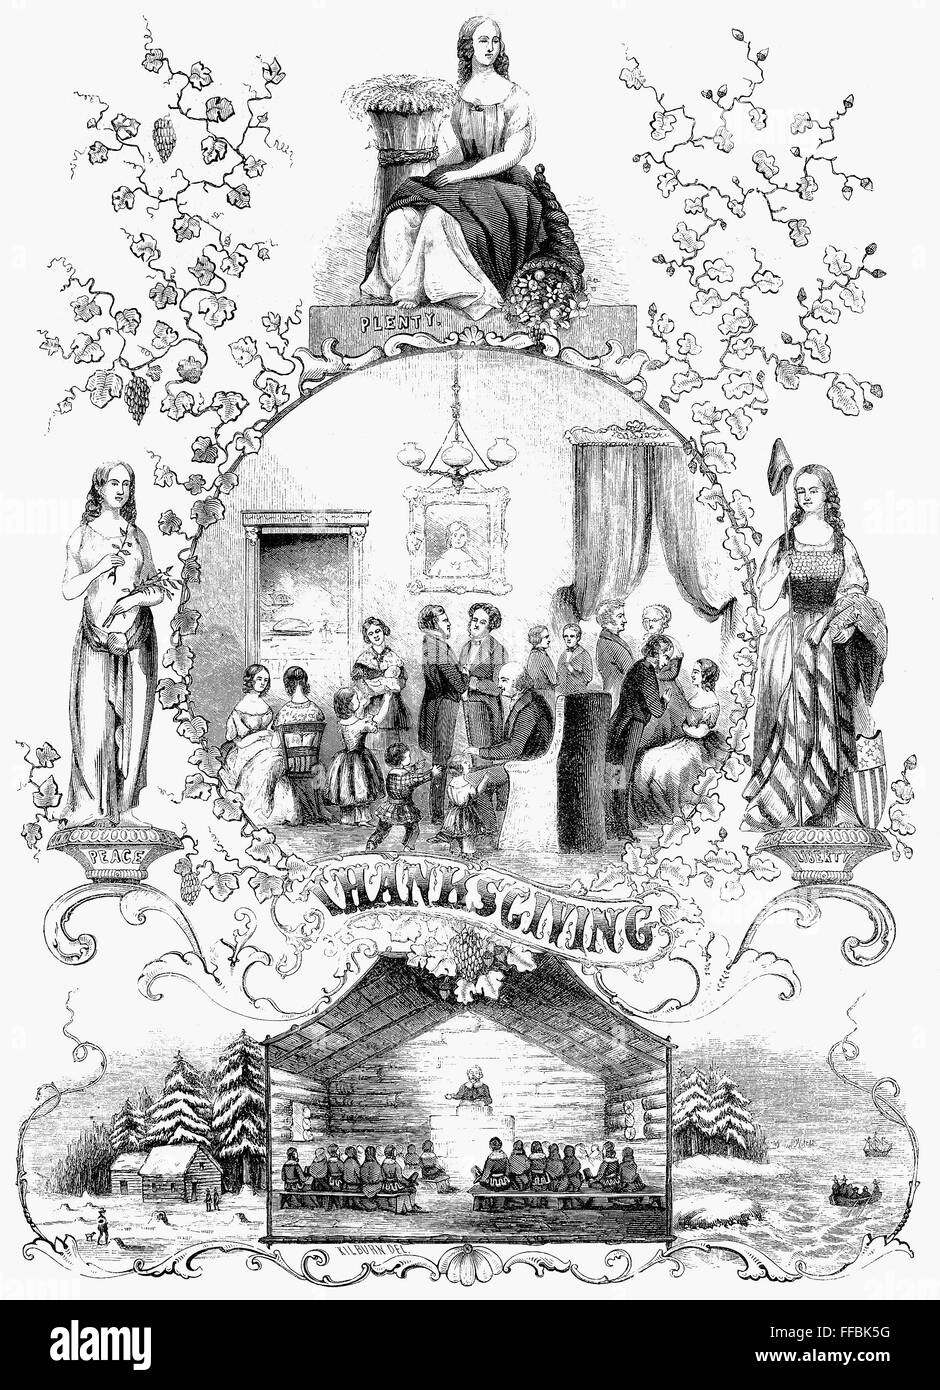 THANKSGIVING, 1852. /nWood engraving, American, 1852. Stock Photo